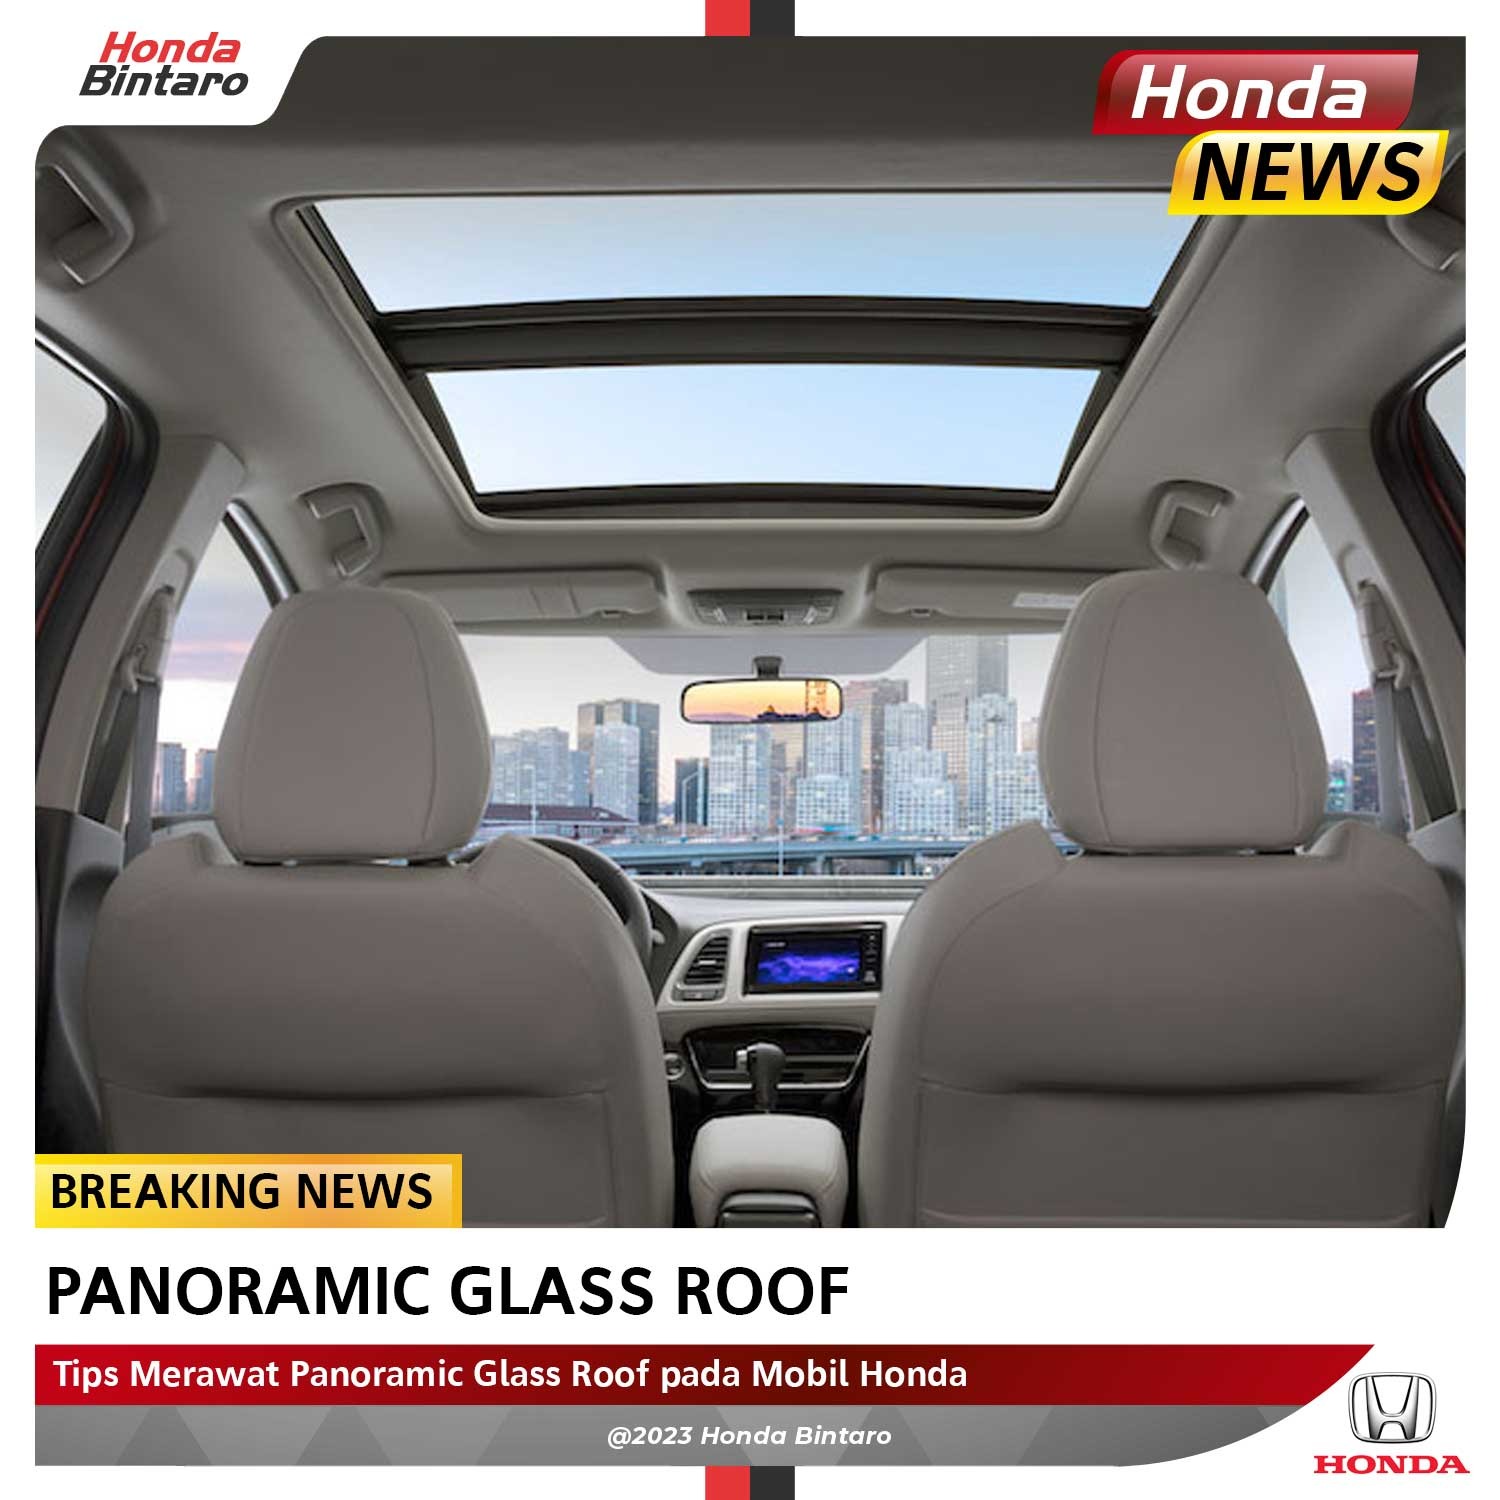 Tips Merawat Panoramic Glass Roof pada Mobil Honda